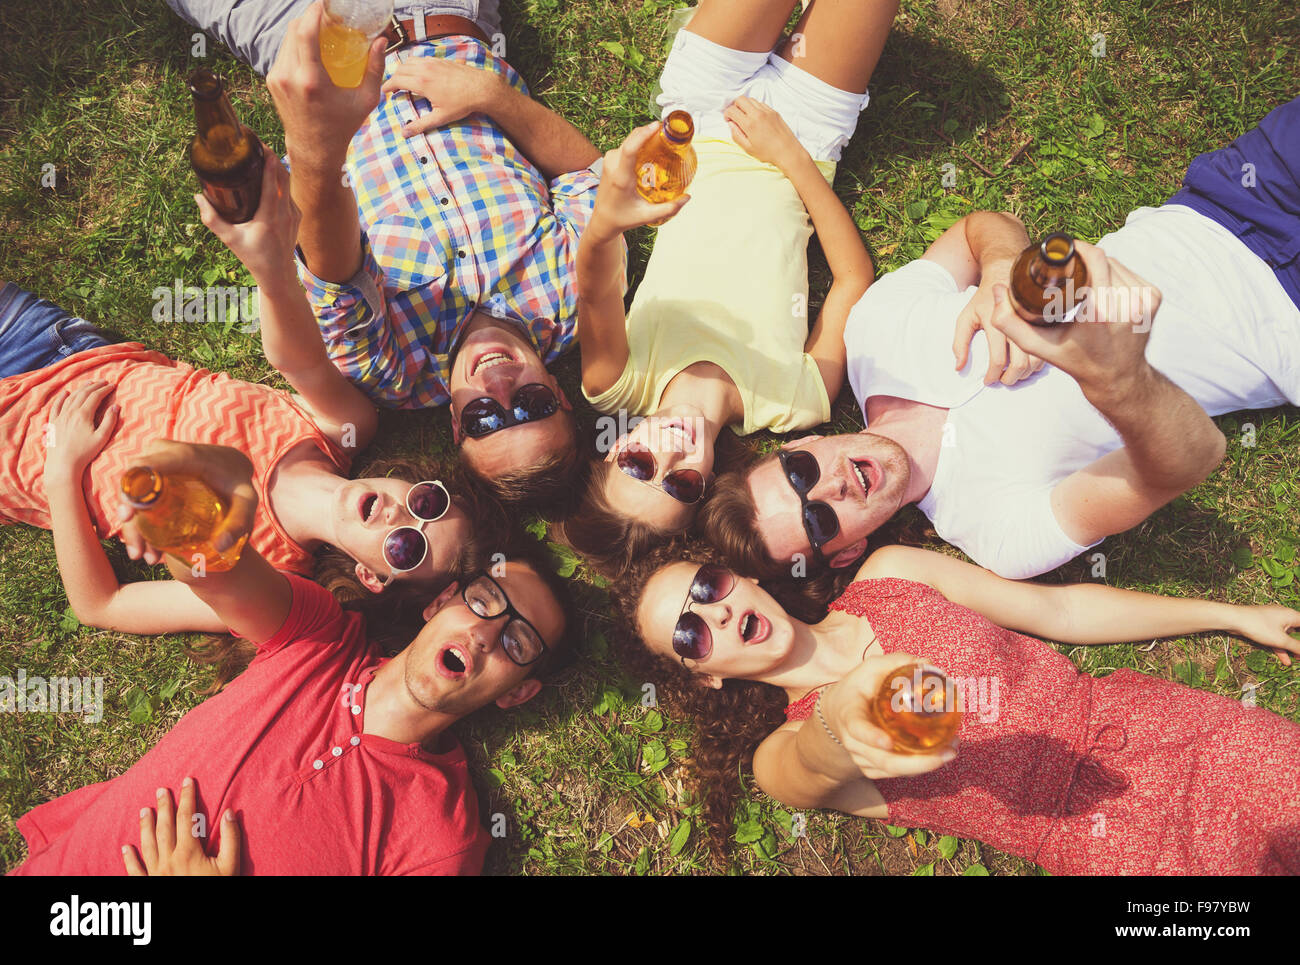 Gruppe von jungen Leuten Spaß im Park, auf dem Rasen liegend mit Getränken Stockfoto